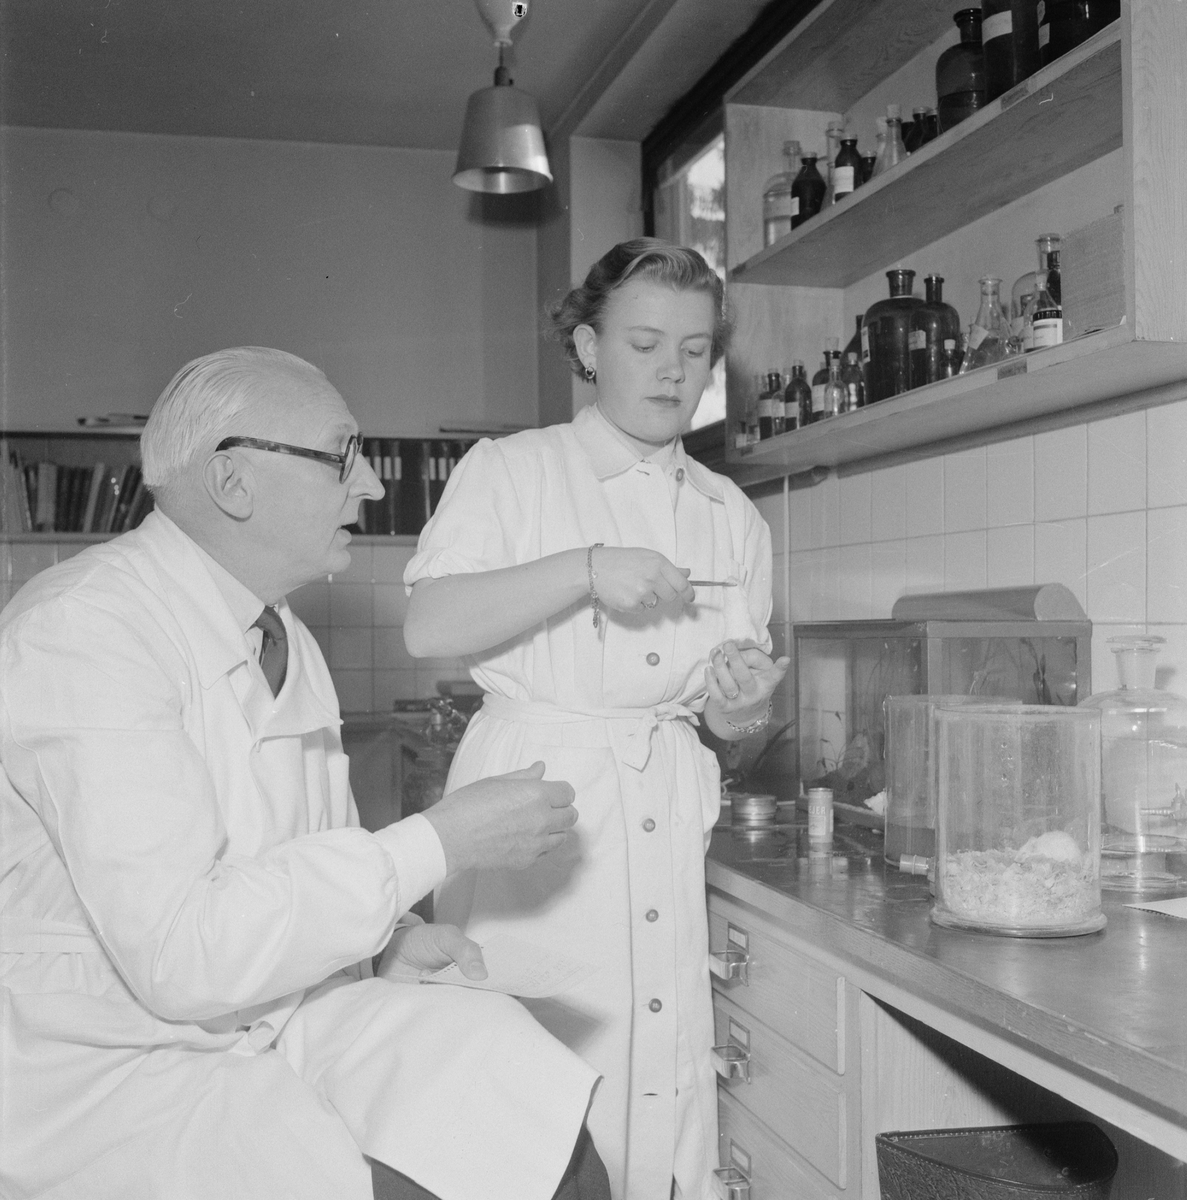 Akademiska sjukhuset, Näslunds kräftforskning, Uppsala, mars 1954